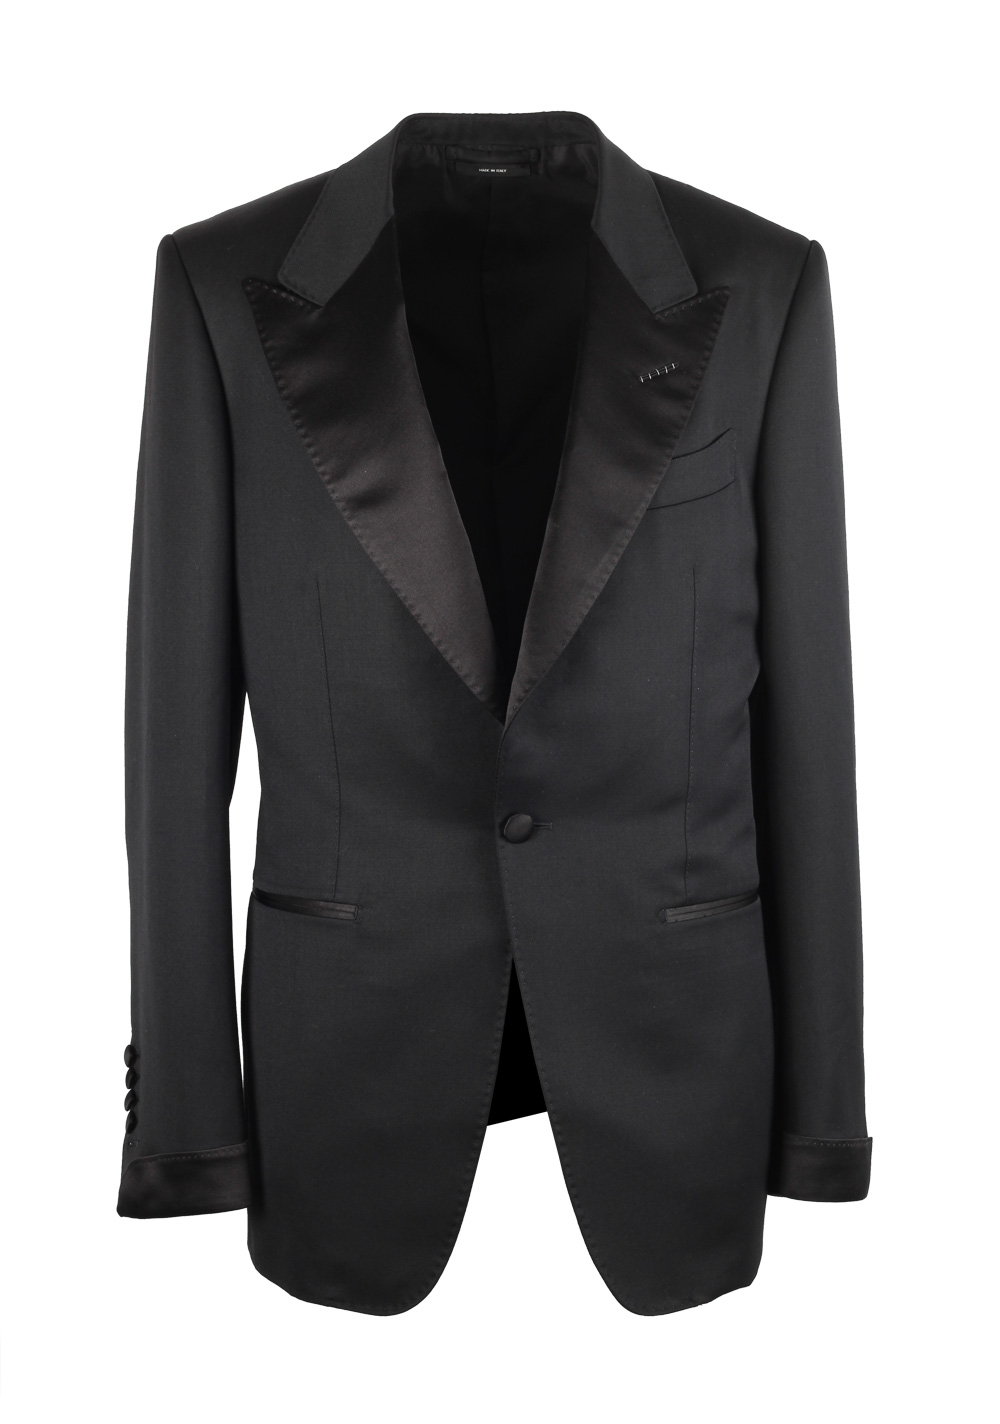 TOM FORD Shelton Black Tuxedo Dinner Suit Size 50C / 40S U.S. | Costume ...